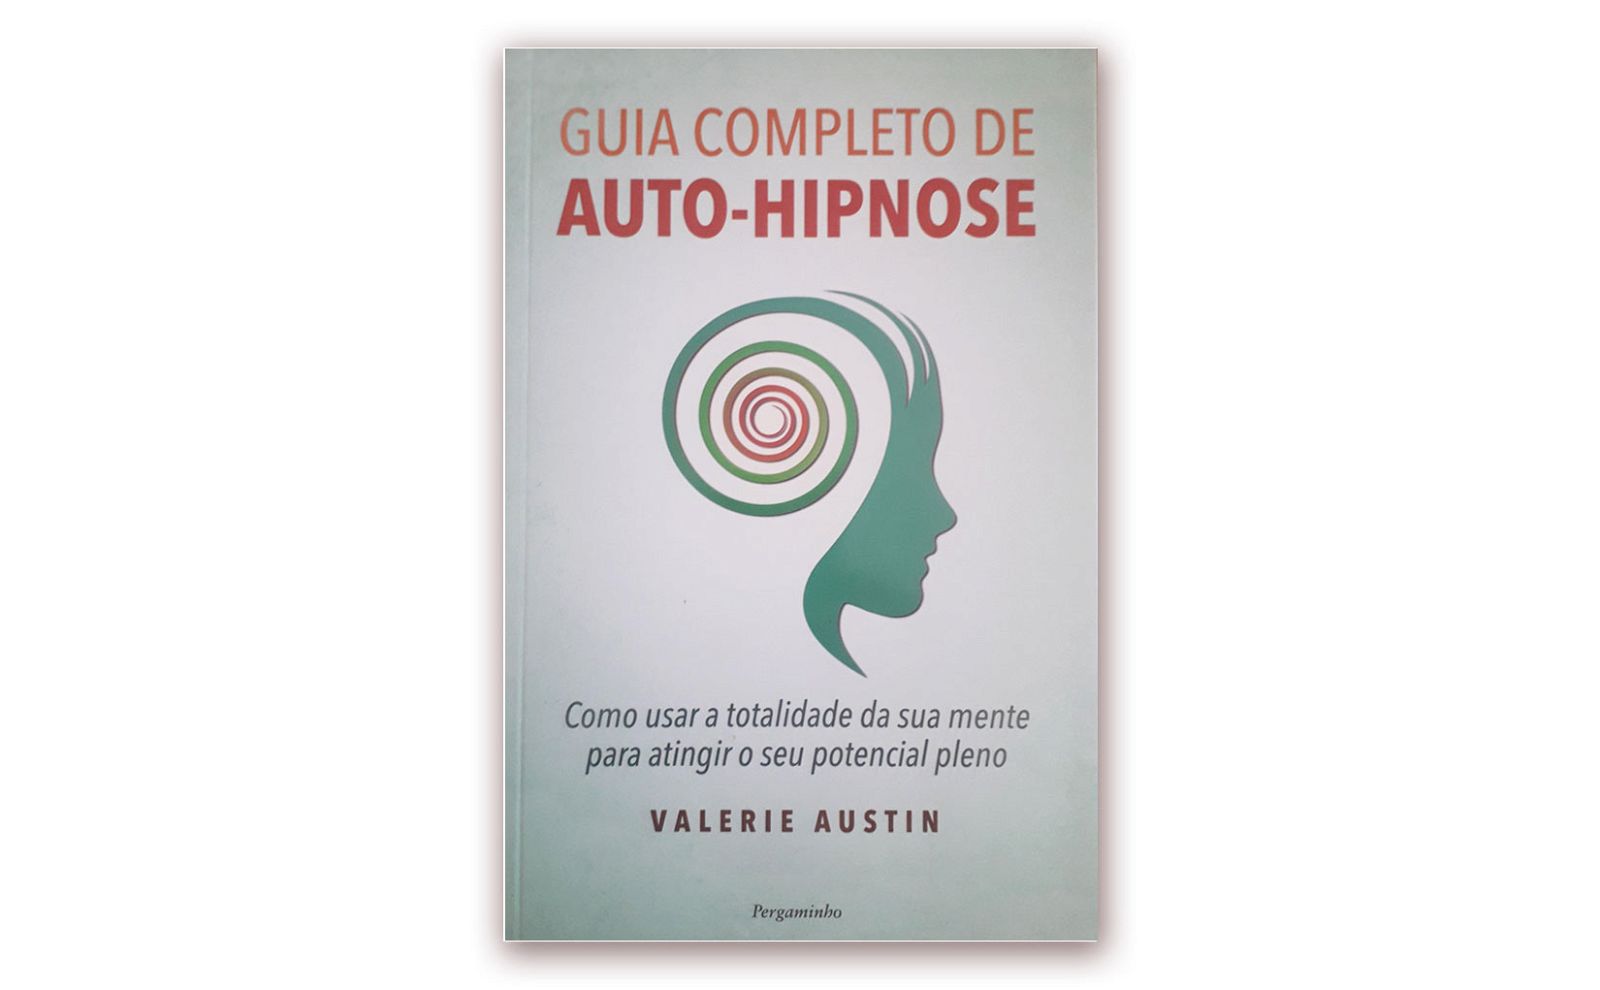 Valerie Austin – “GUIA COMPLETO DE AUTO-HIPNOSE”